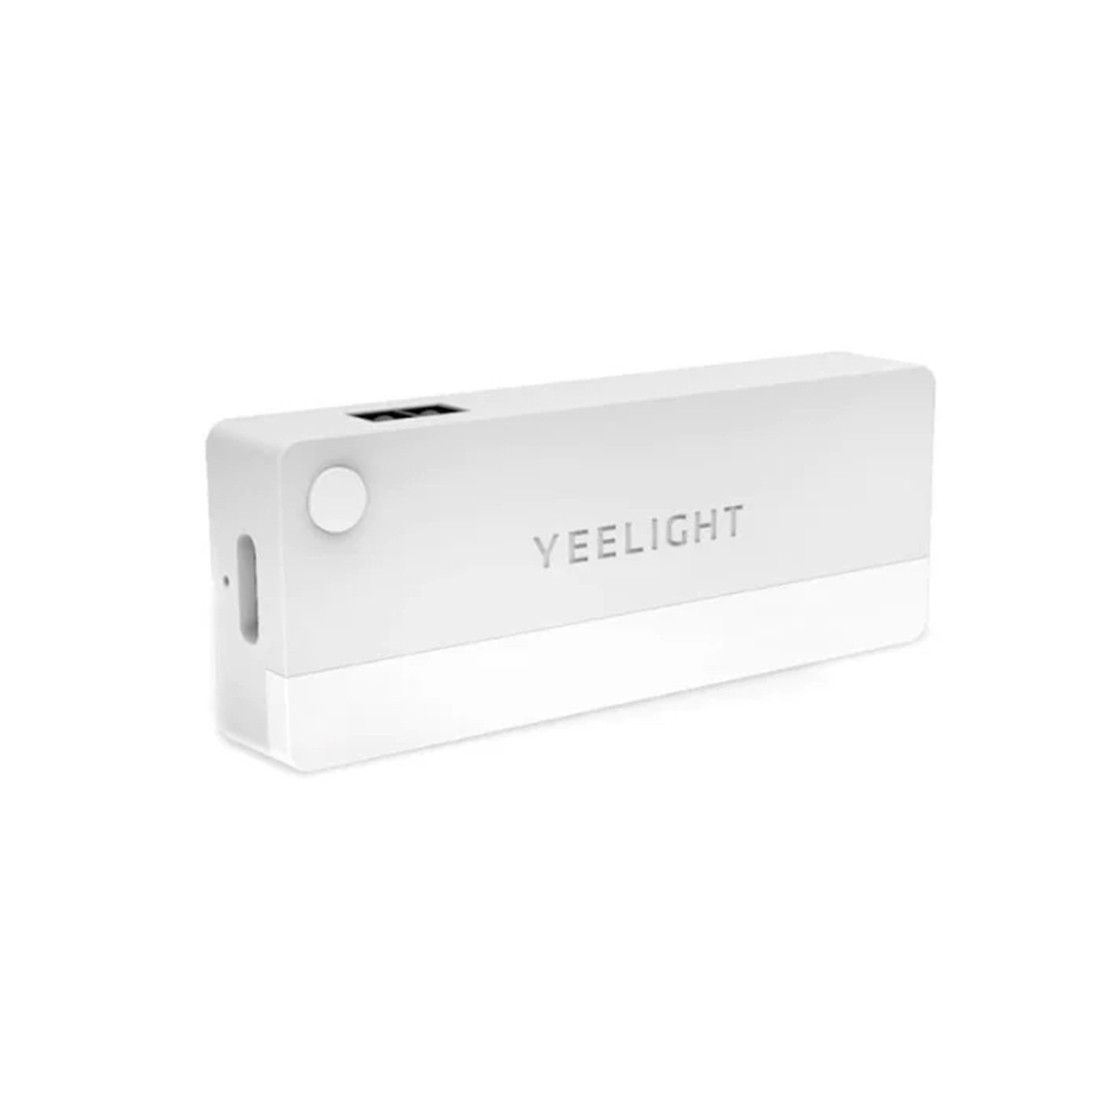 Светильник c датчиком движения Yeelight Sensor Drawer Light Белый, фото 1